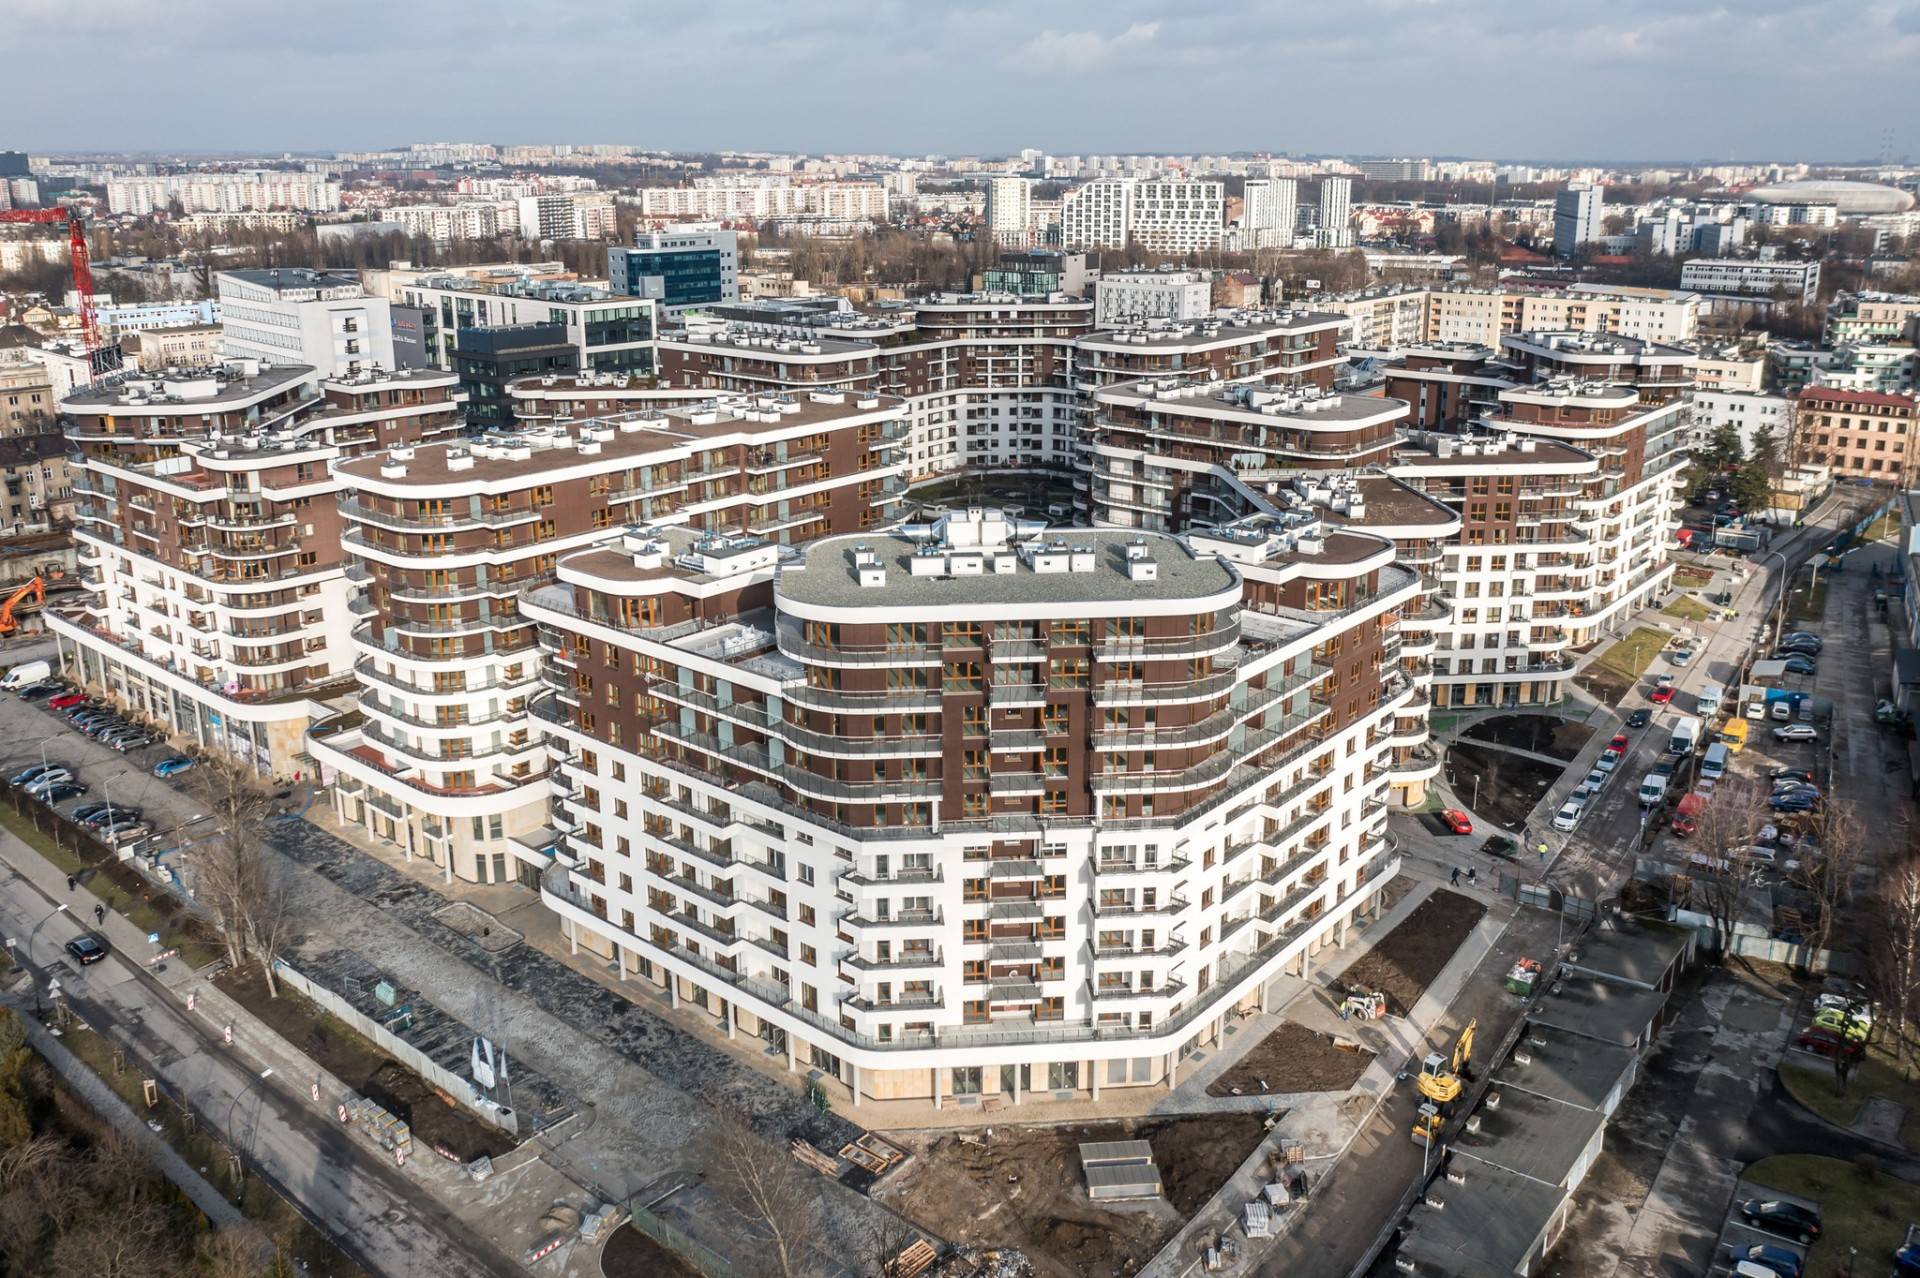 Ceny mieszkań w Krakowie wyhamowały, gdzie jest największy wybór?